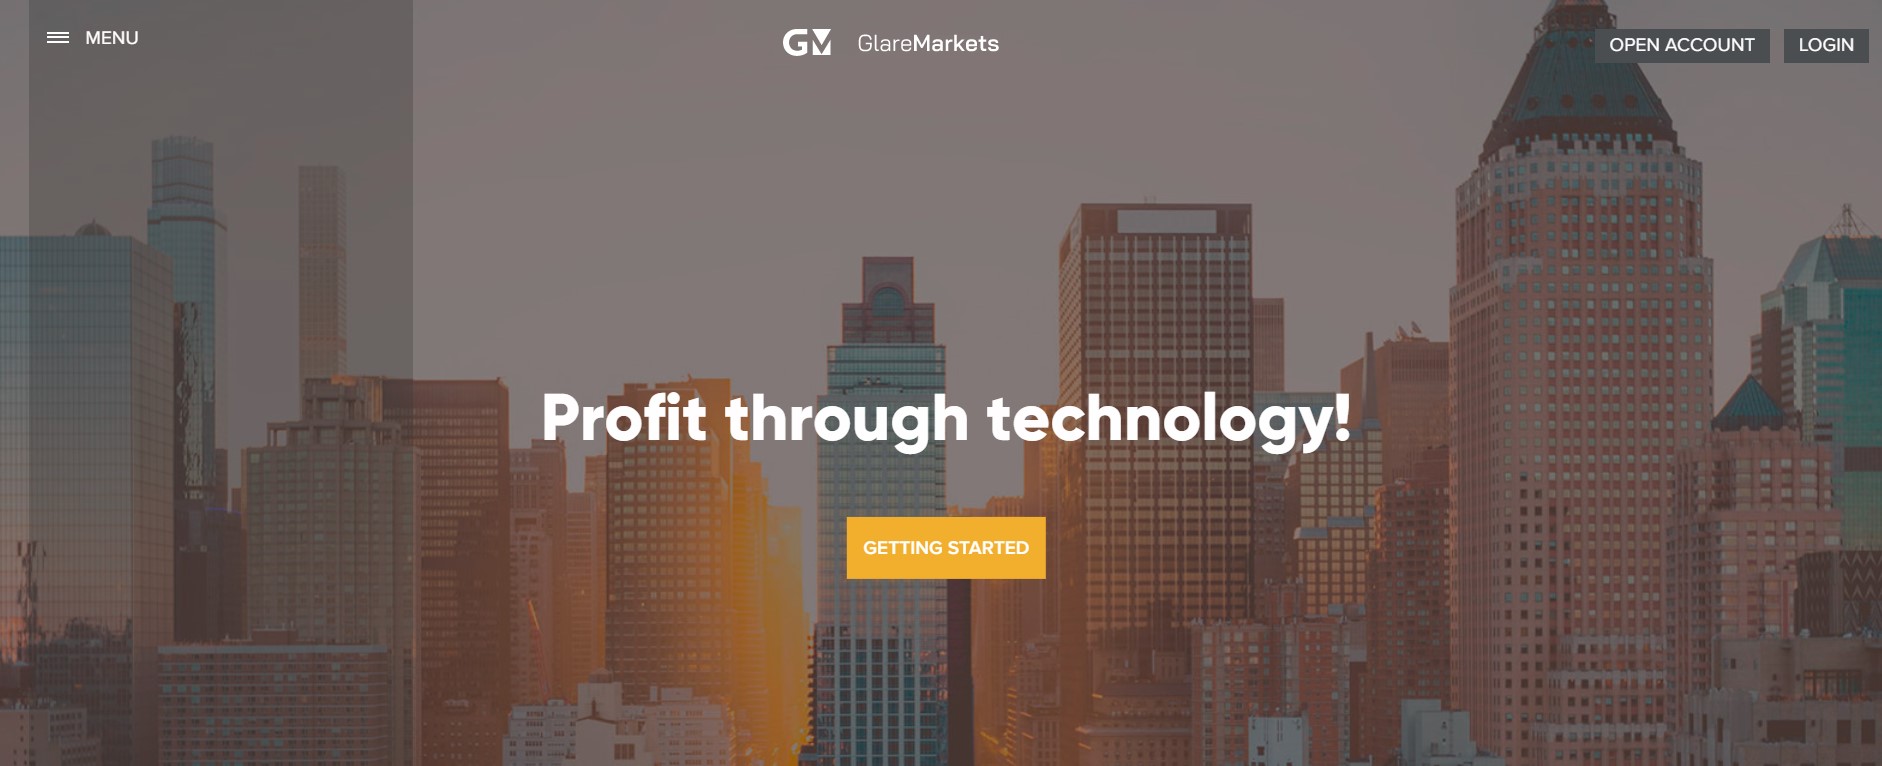 Glare Markets website